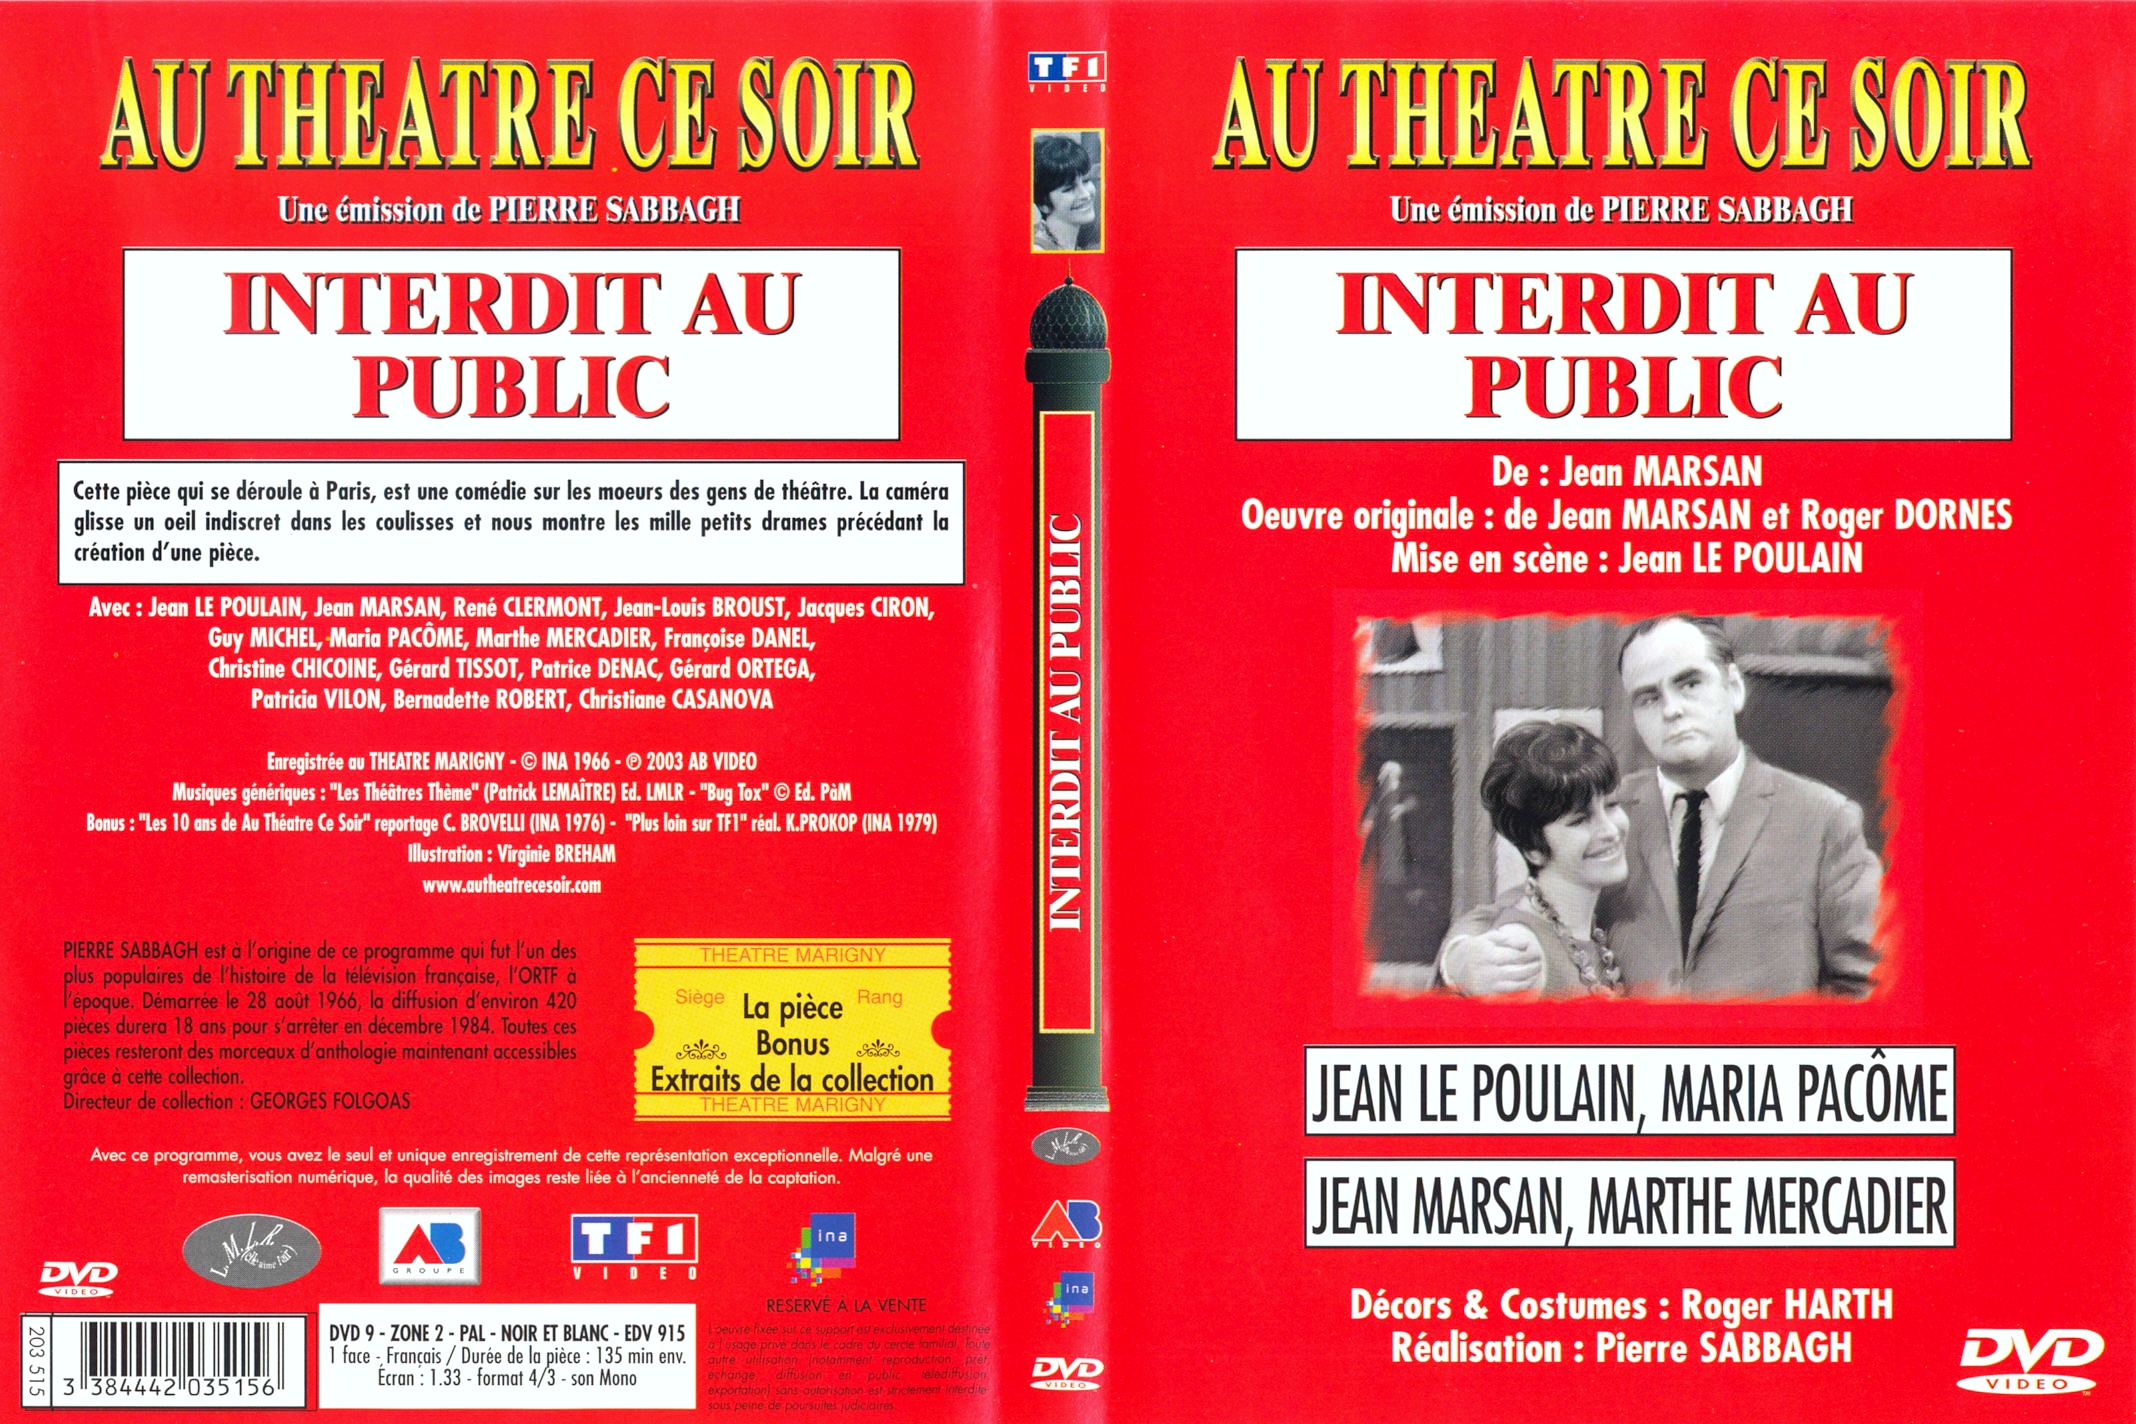 Jaquette DVD Au thatre ce soir - Interdit au public